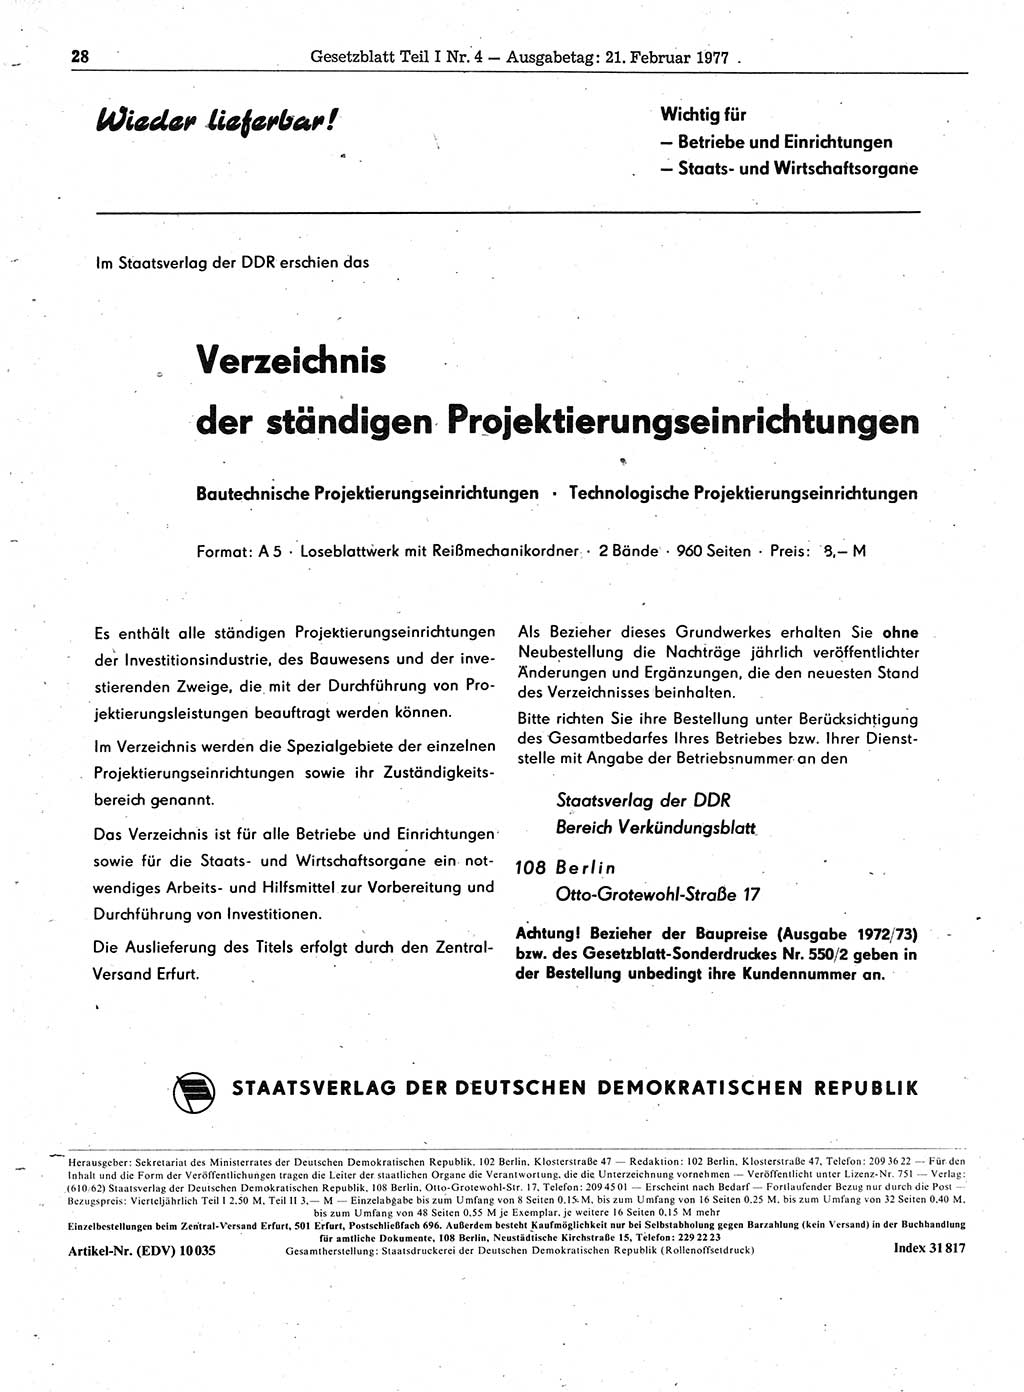 Gesetzblatt (GBl.) der Deutschen Demokratischen Republik (DDR) Teil Ⅰ 1977, Seite 28 (GBl. DDR Ⅰ 1977, S. 28)